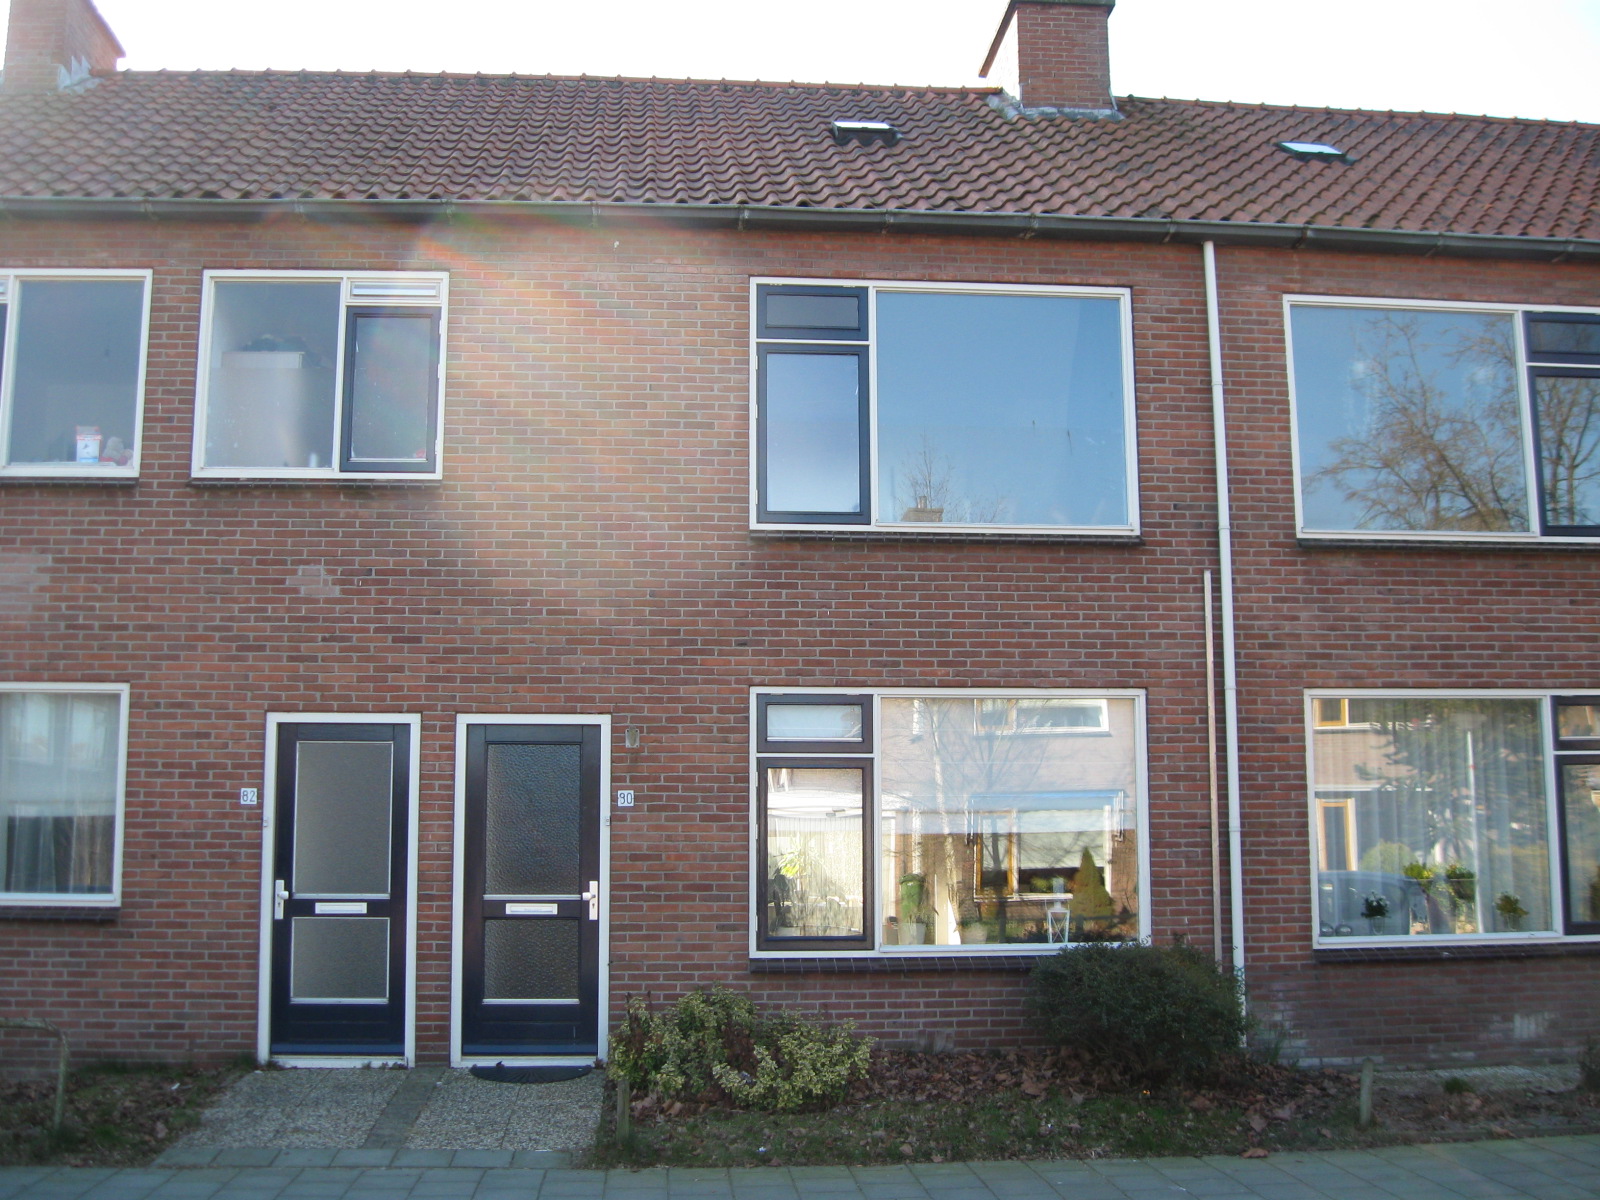 Burgemeester Voetelinkstraat 82, 8331 BZ Steenwijk, Nederland